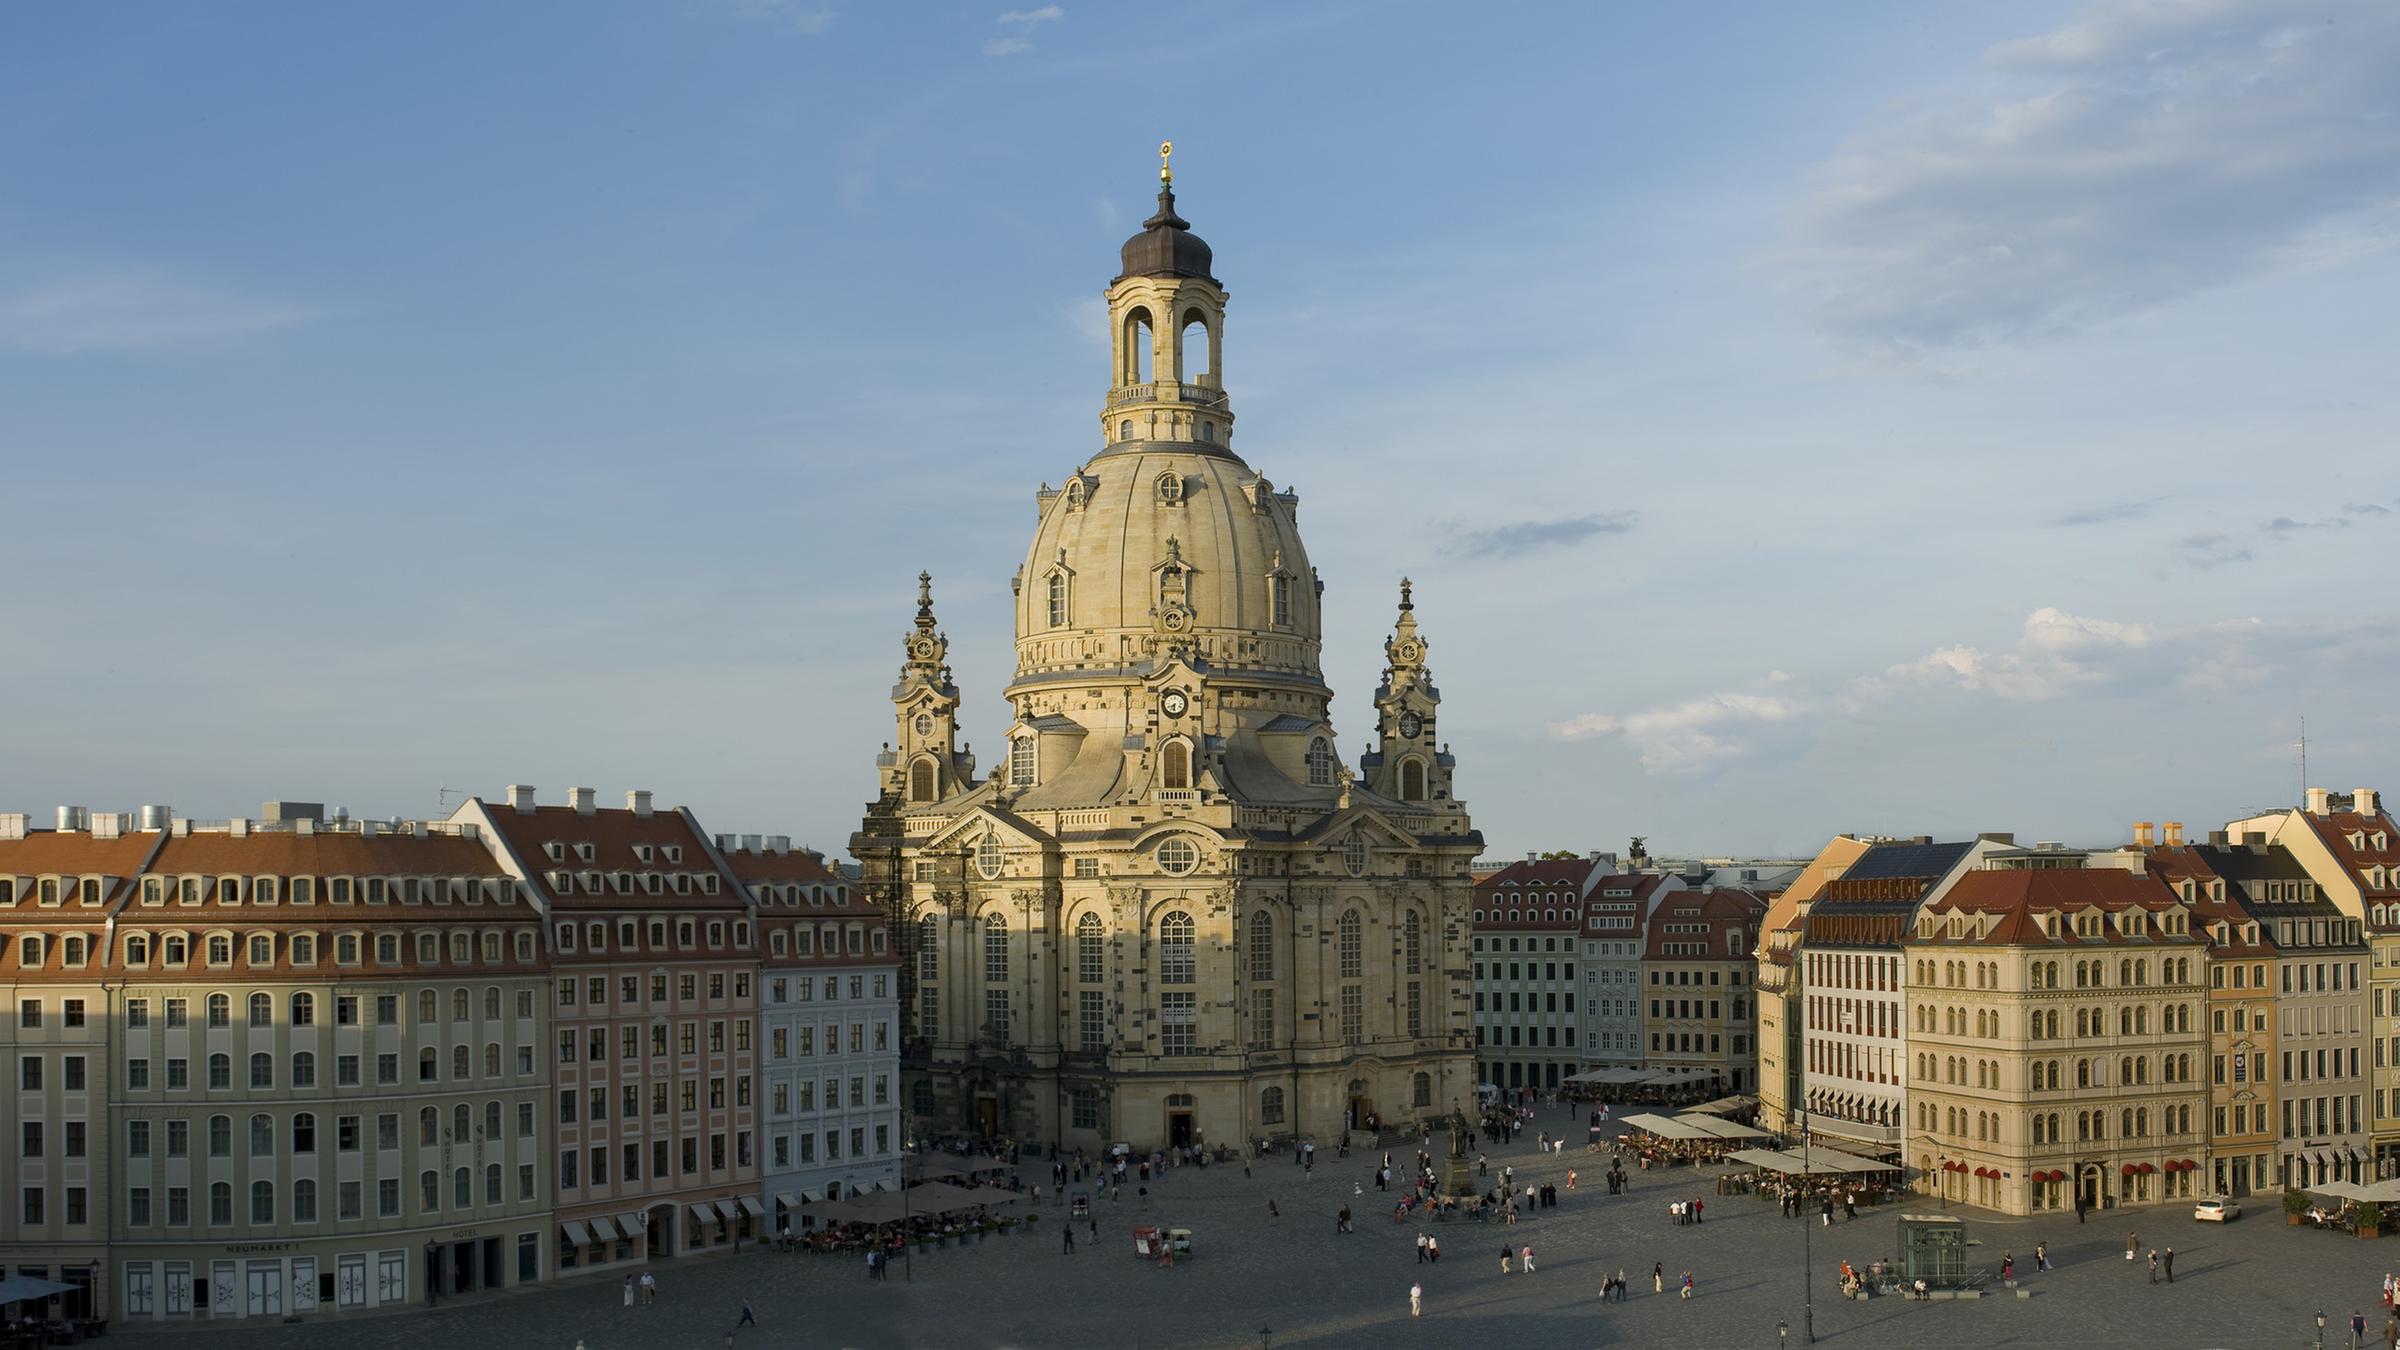 Дрезден, фрауэнкирхе (frauenkirche) - евангелическо-лютеранская церковь. описание, история